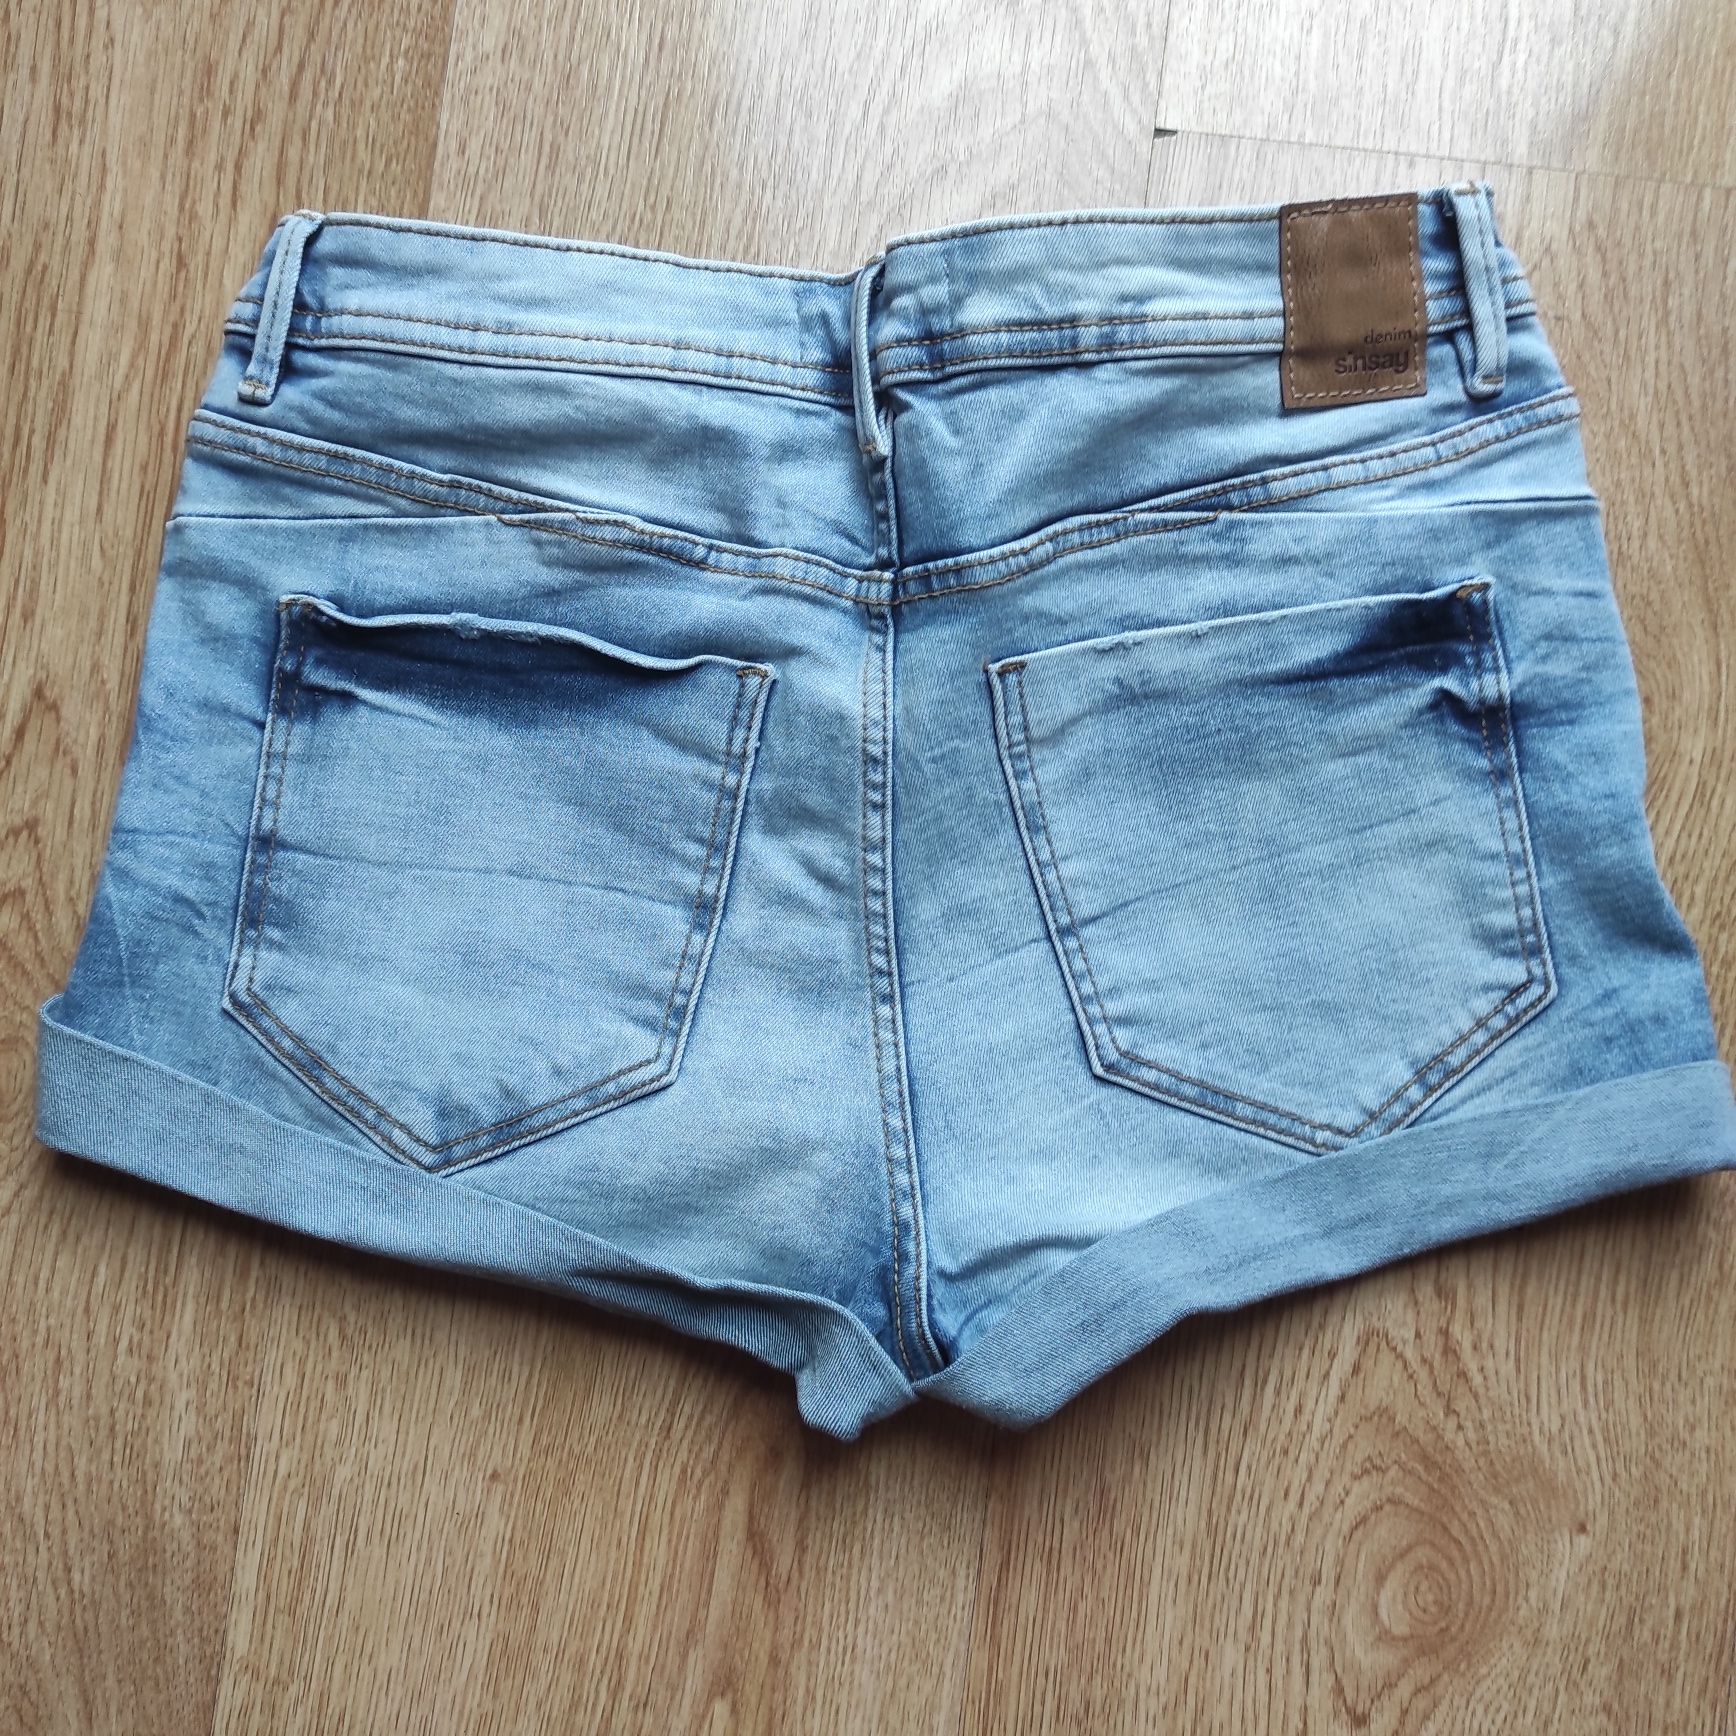 Spodenki krótkie jasny jeans dżins damskie rozmiar S sinsay